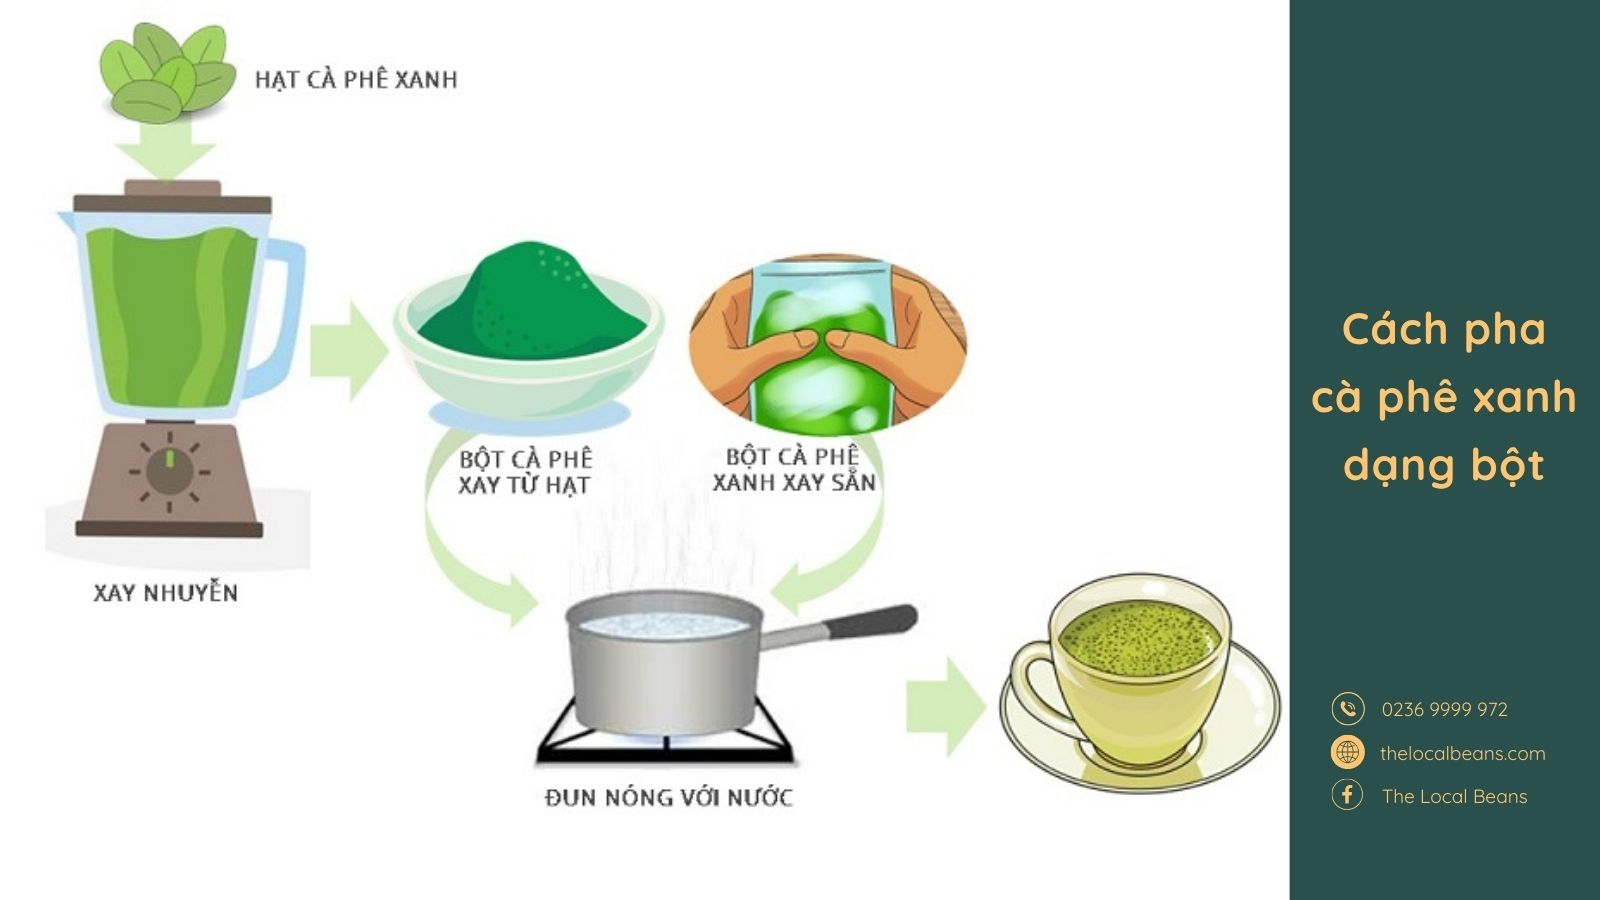 hướng dẫn cách pha chế cà phê xanh với các bước xay nhuyễn và đun nóng với nước